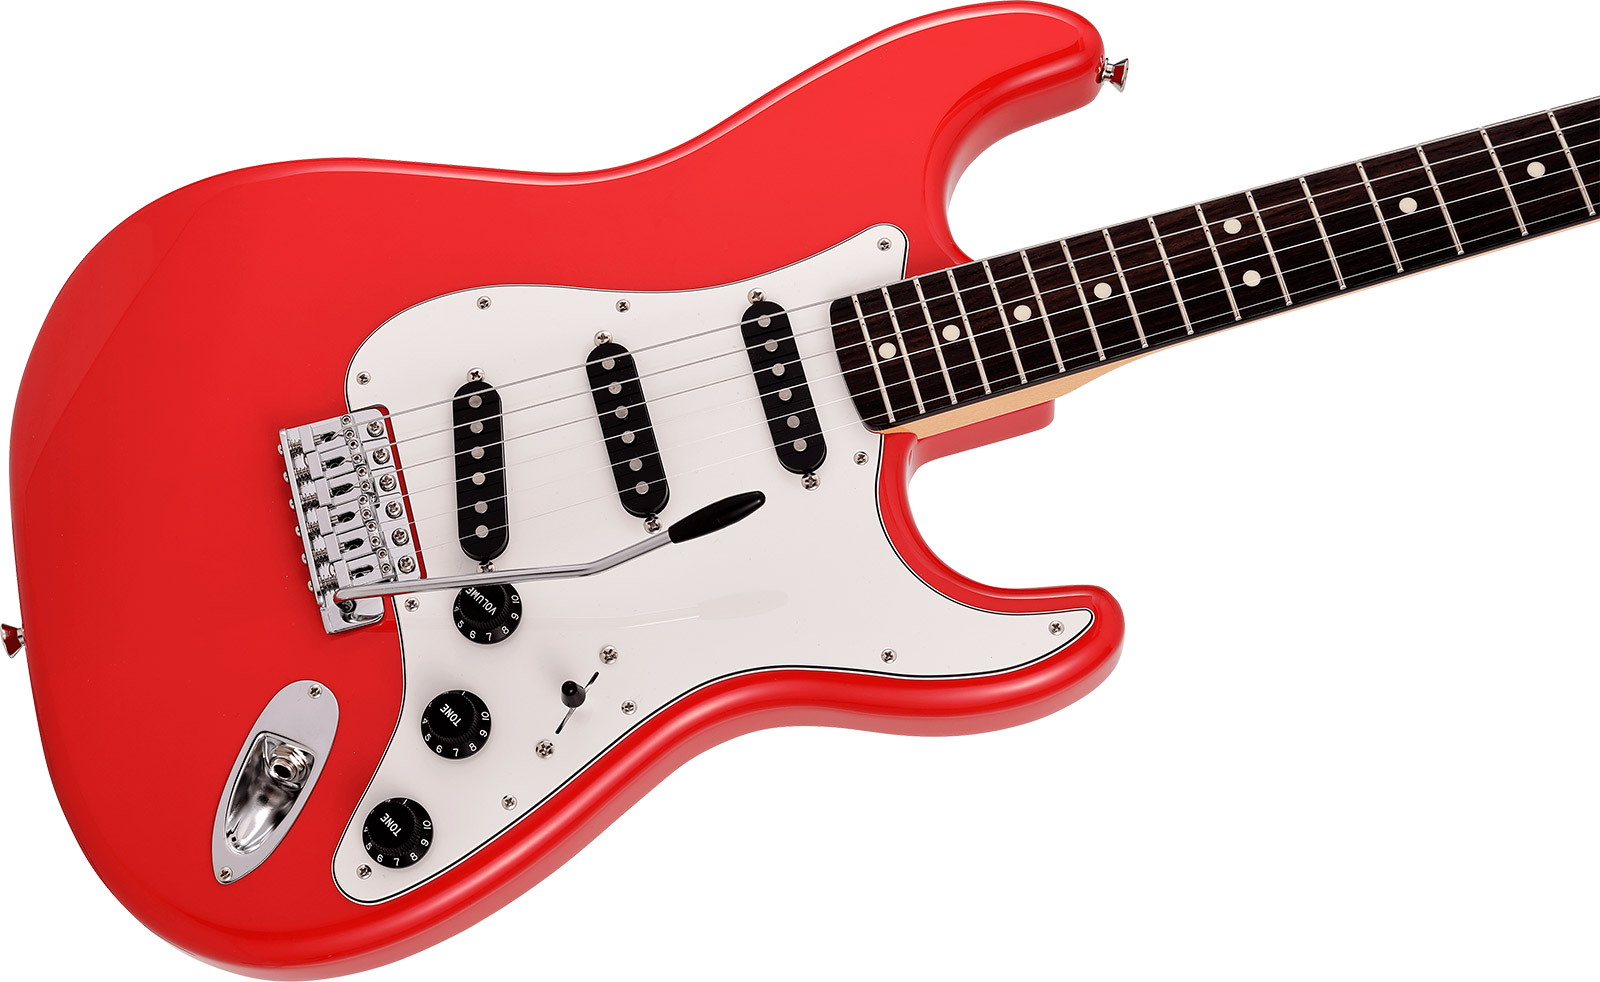 Fender Strat International Color Ltd Jap 3s Trem Rw - Morocco Red - Guitare Électrique Forme Str - Variation 2